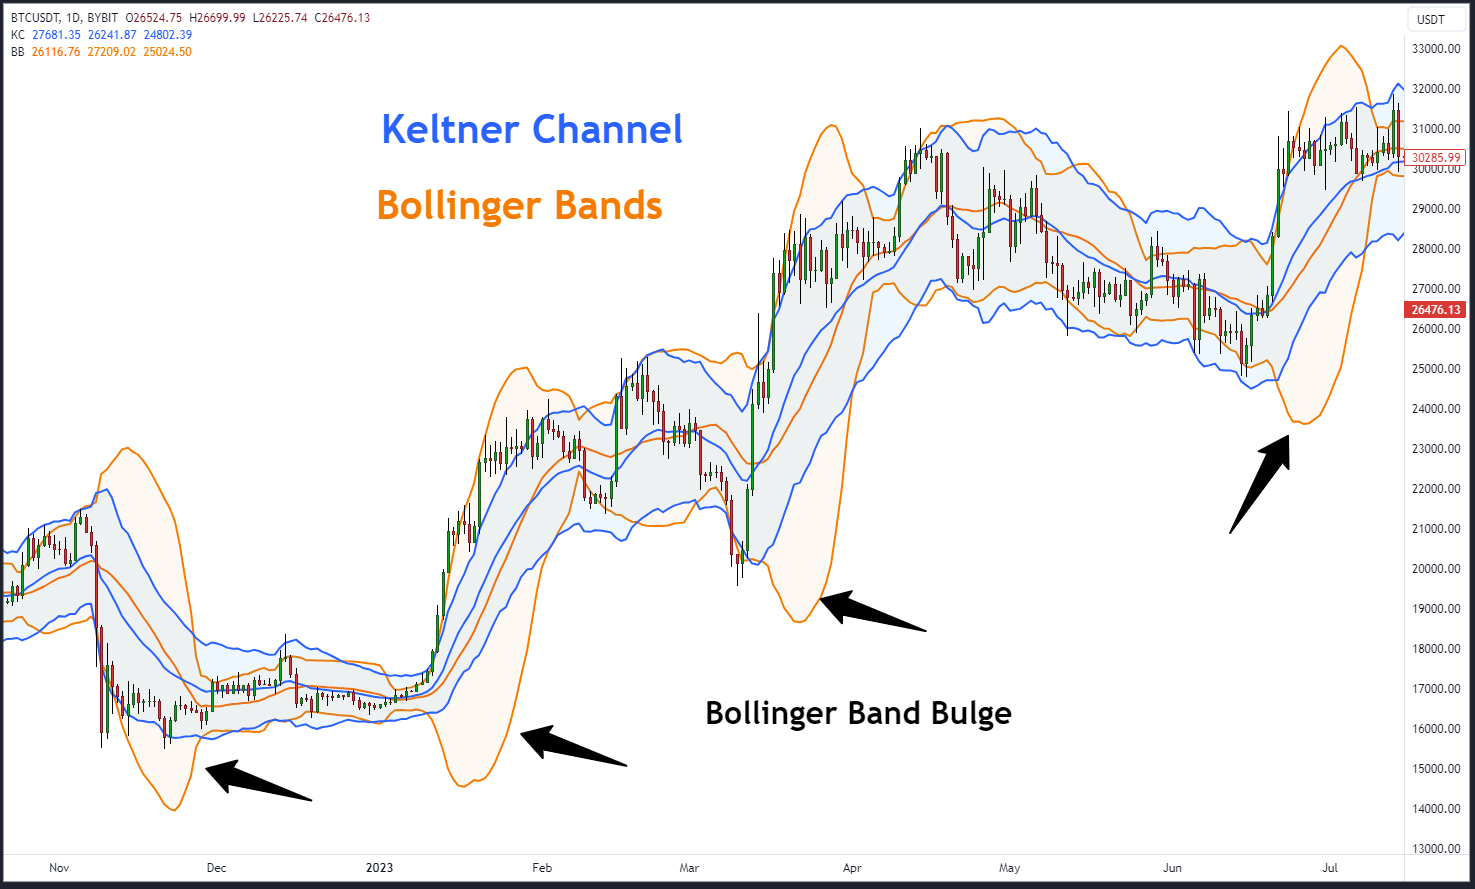 Keltner channel vs. bollinger bands